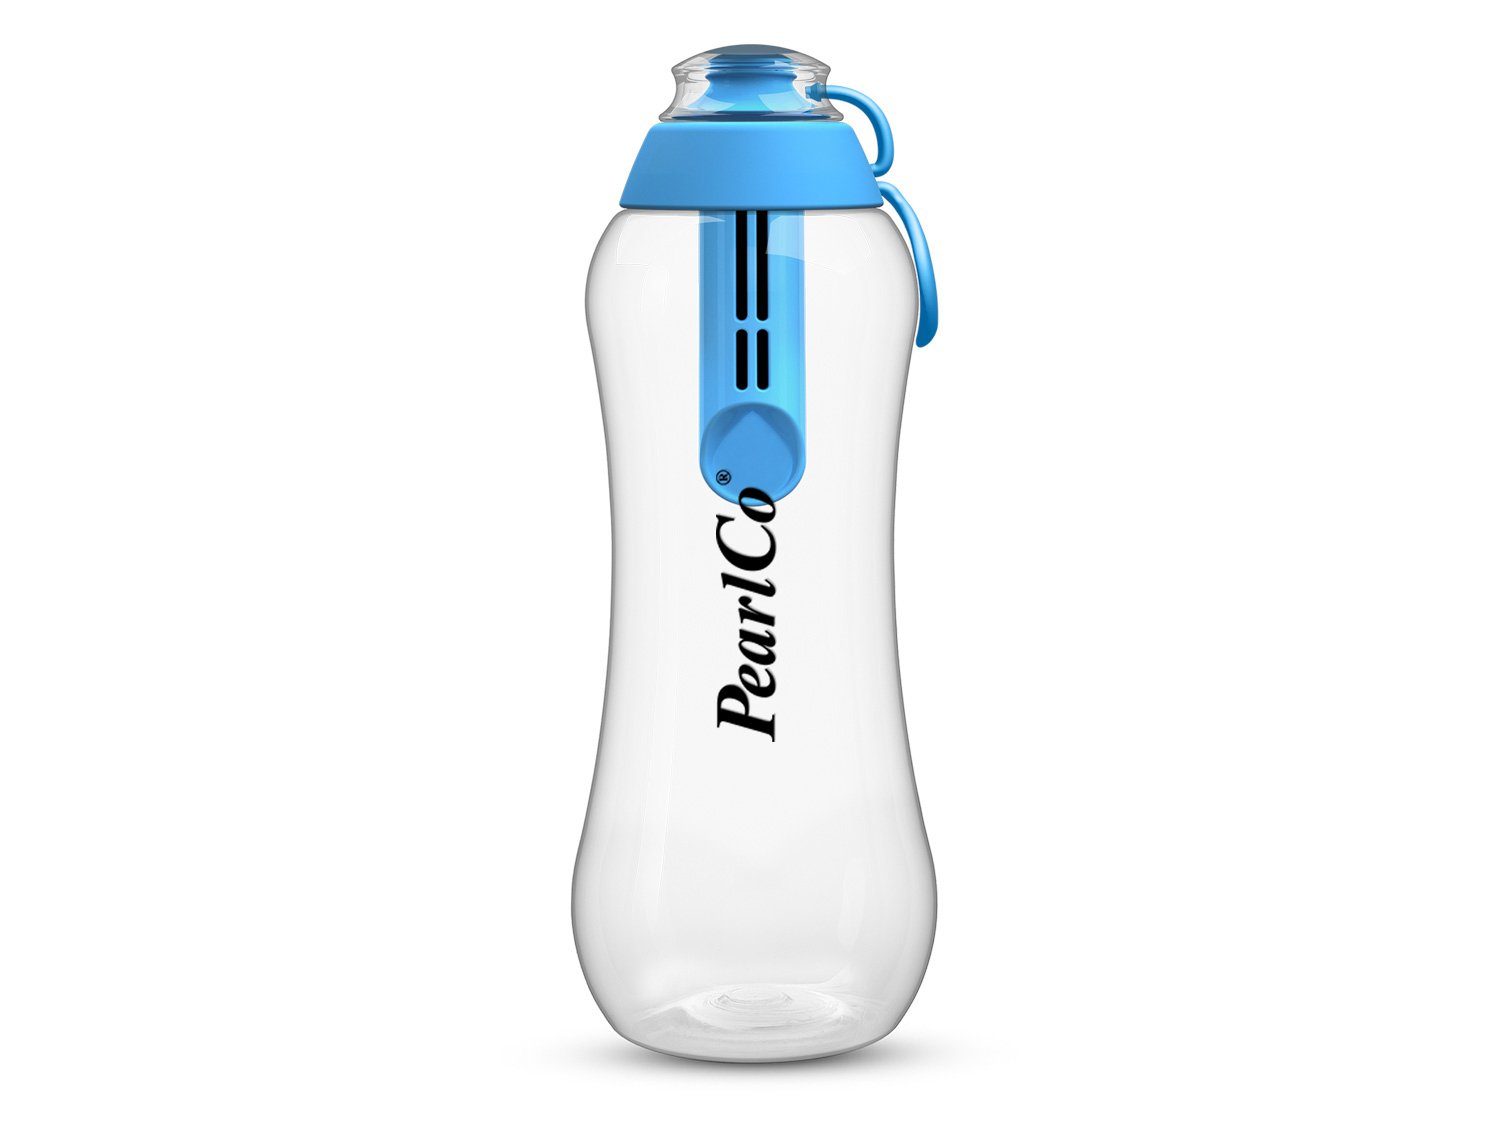 Trinkflasche PearlCo blau 0,7 Filter Liter PearlCo Trinkflasche Mit